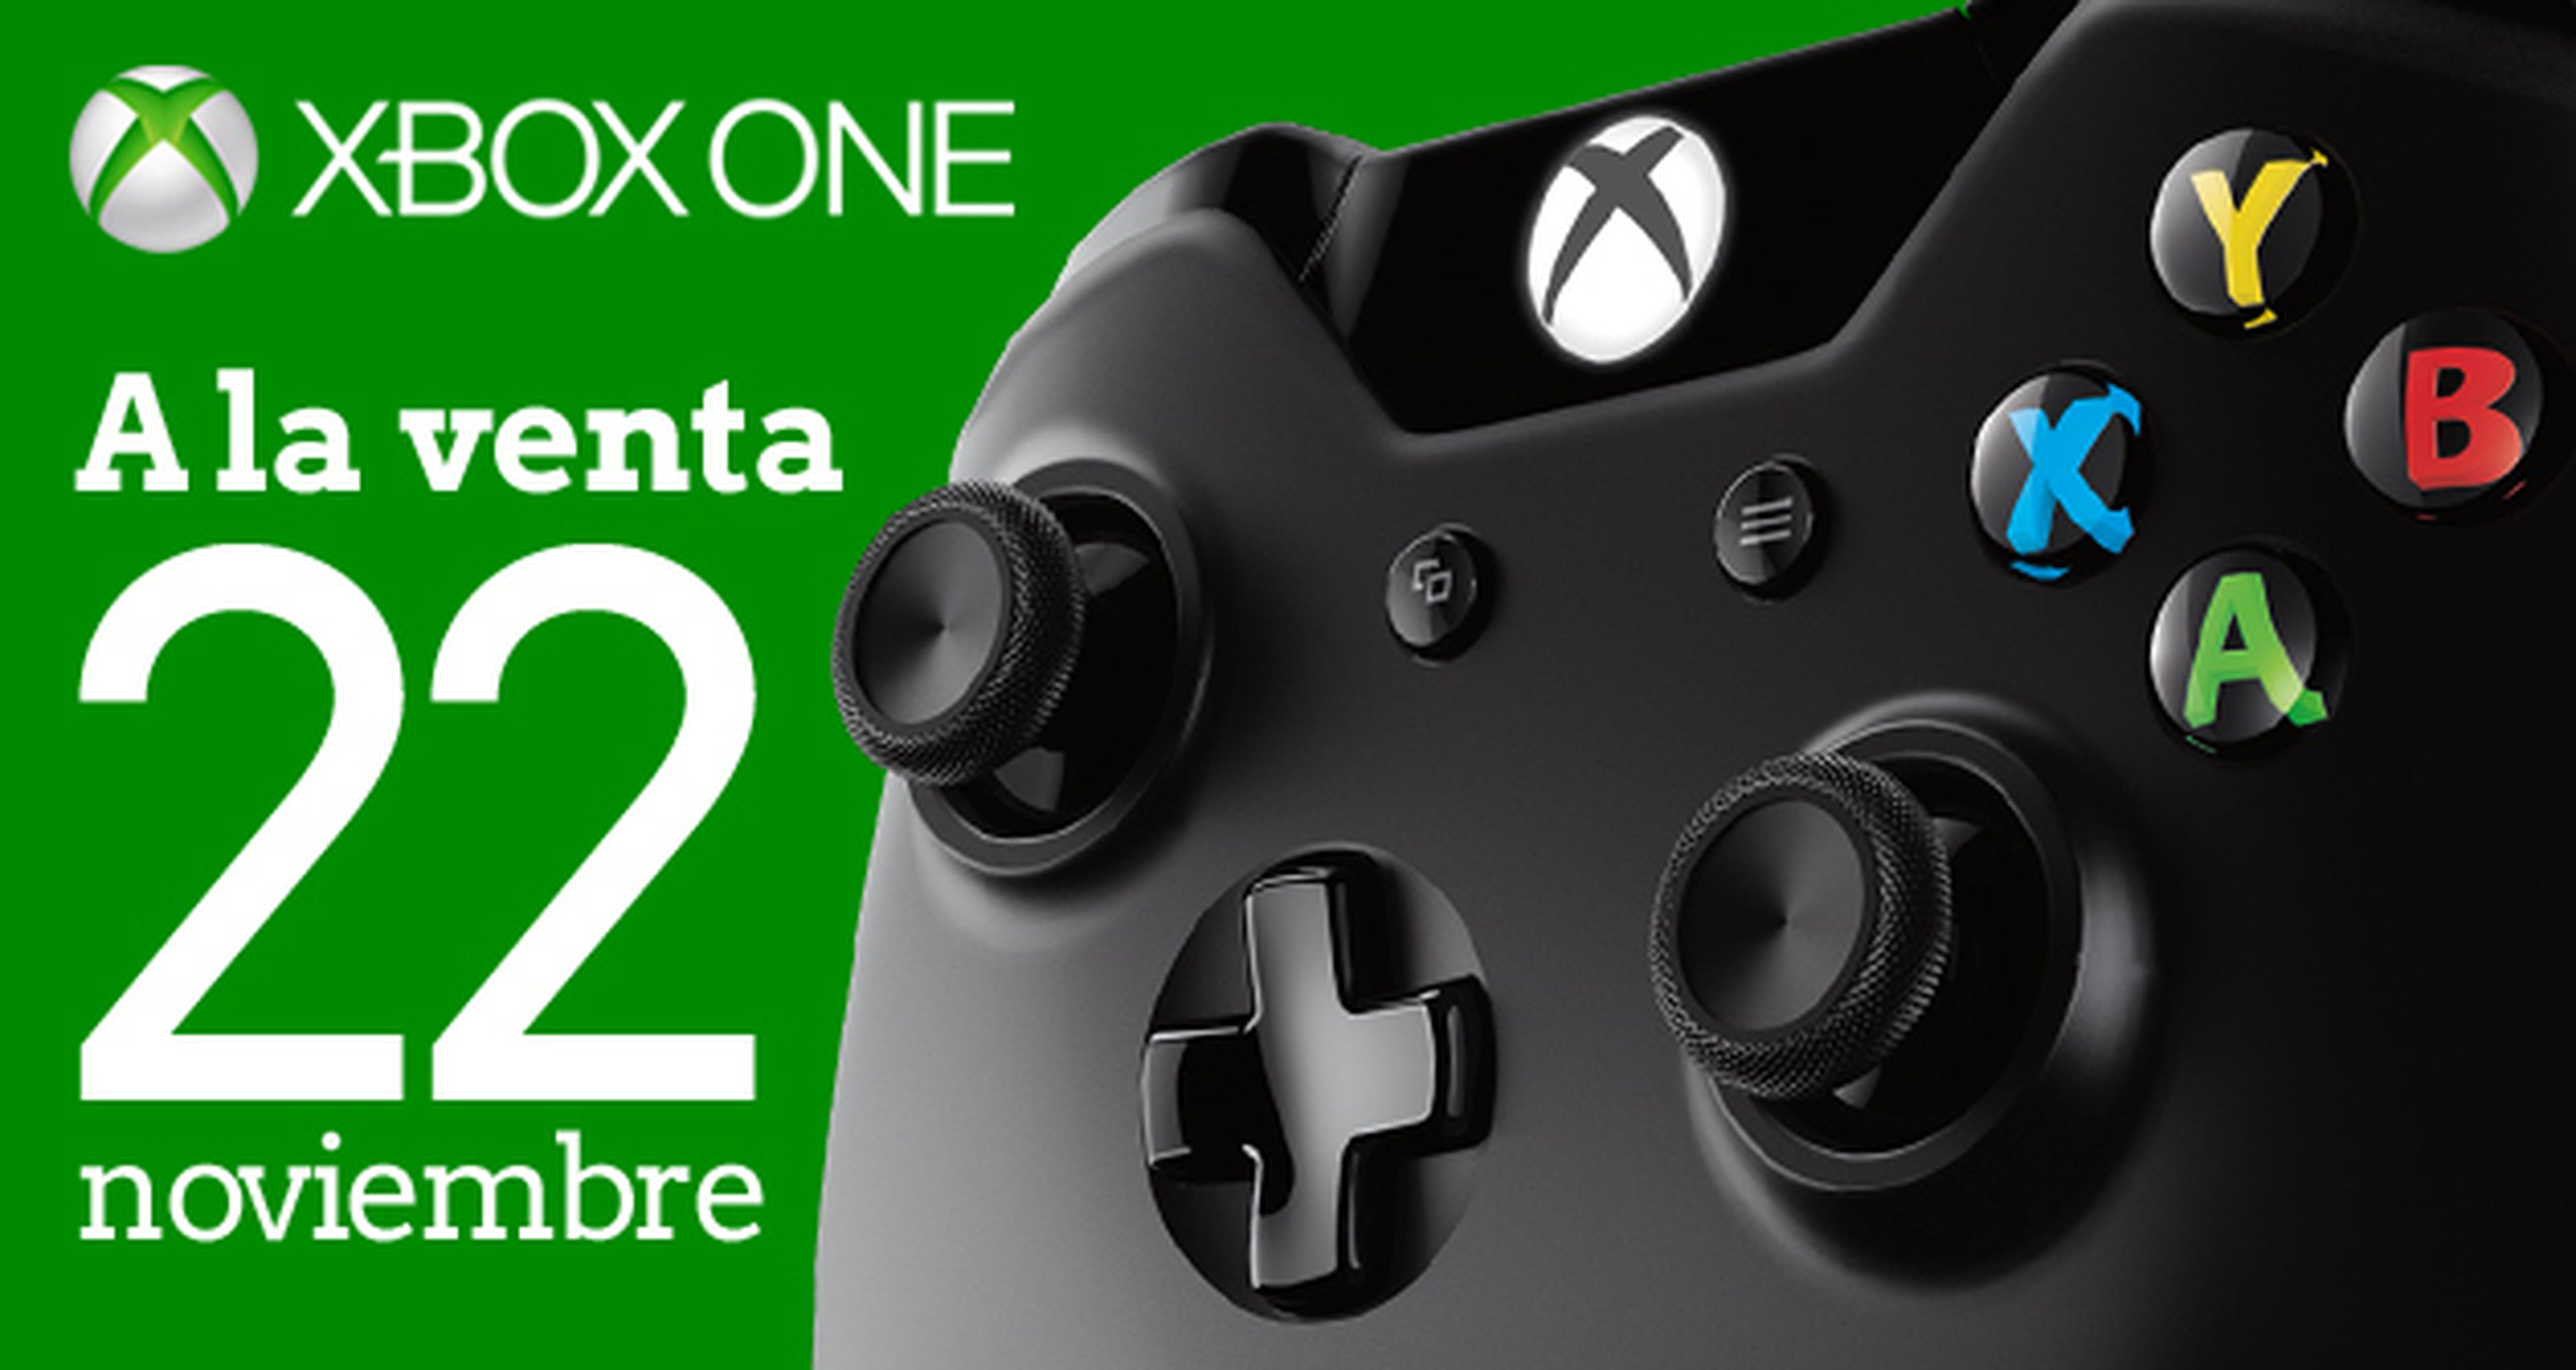 Xbox One: fecha de lanzamiento el 22 de noviembre